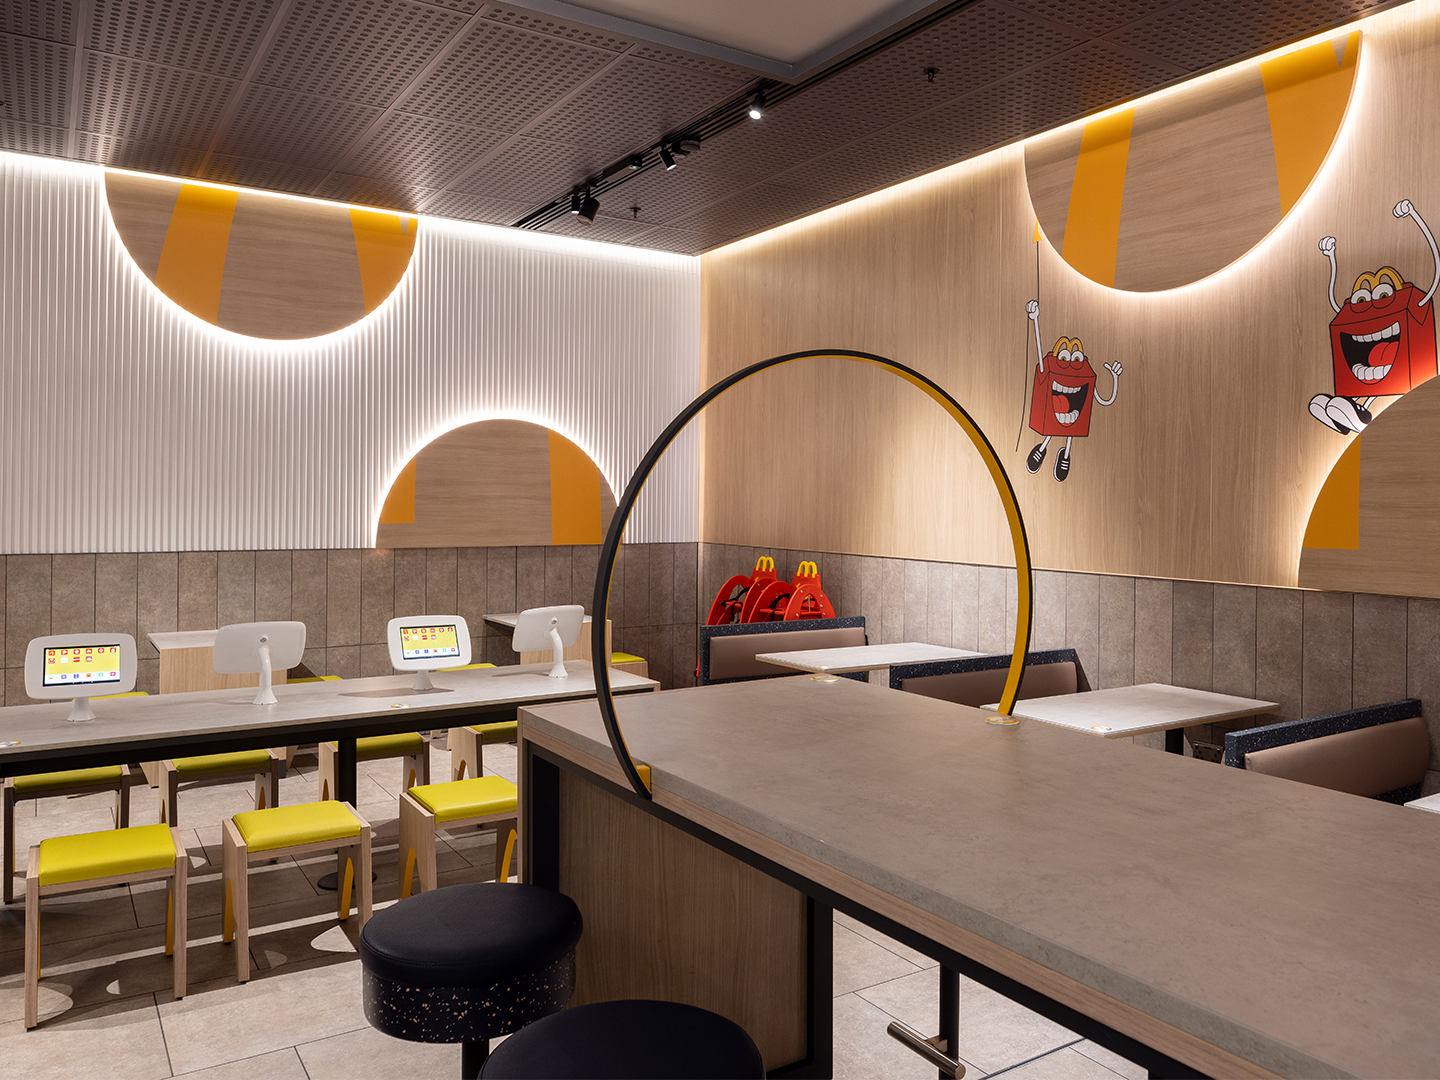 Conception de restaurant - Meubles de restaurant sur mesure - McDonald's Luna - Luminaires sur mesure - Meubles sure mesure - Industrie de la restauration